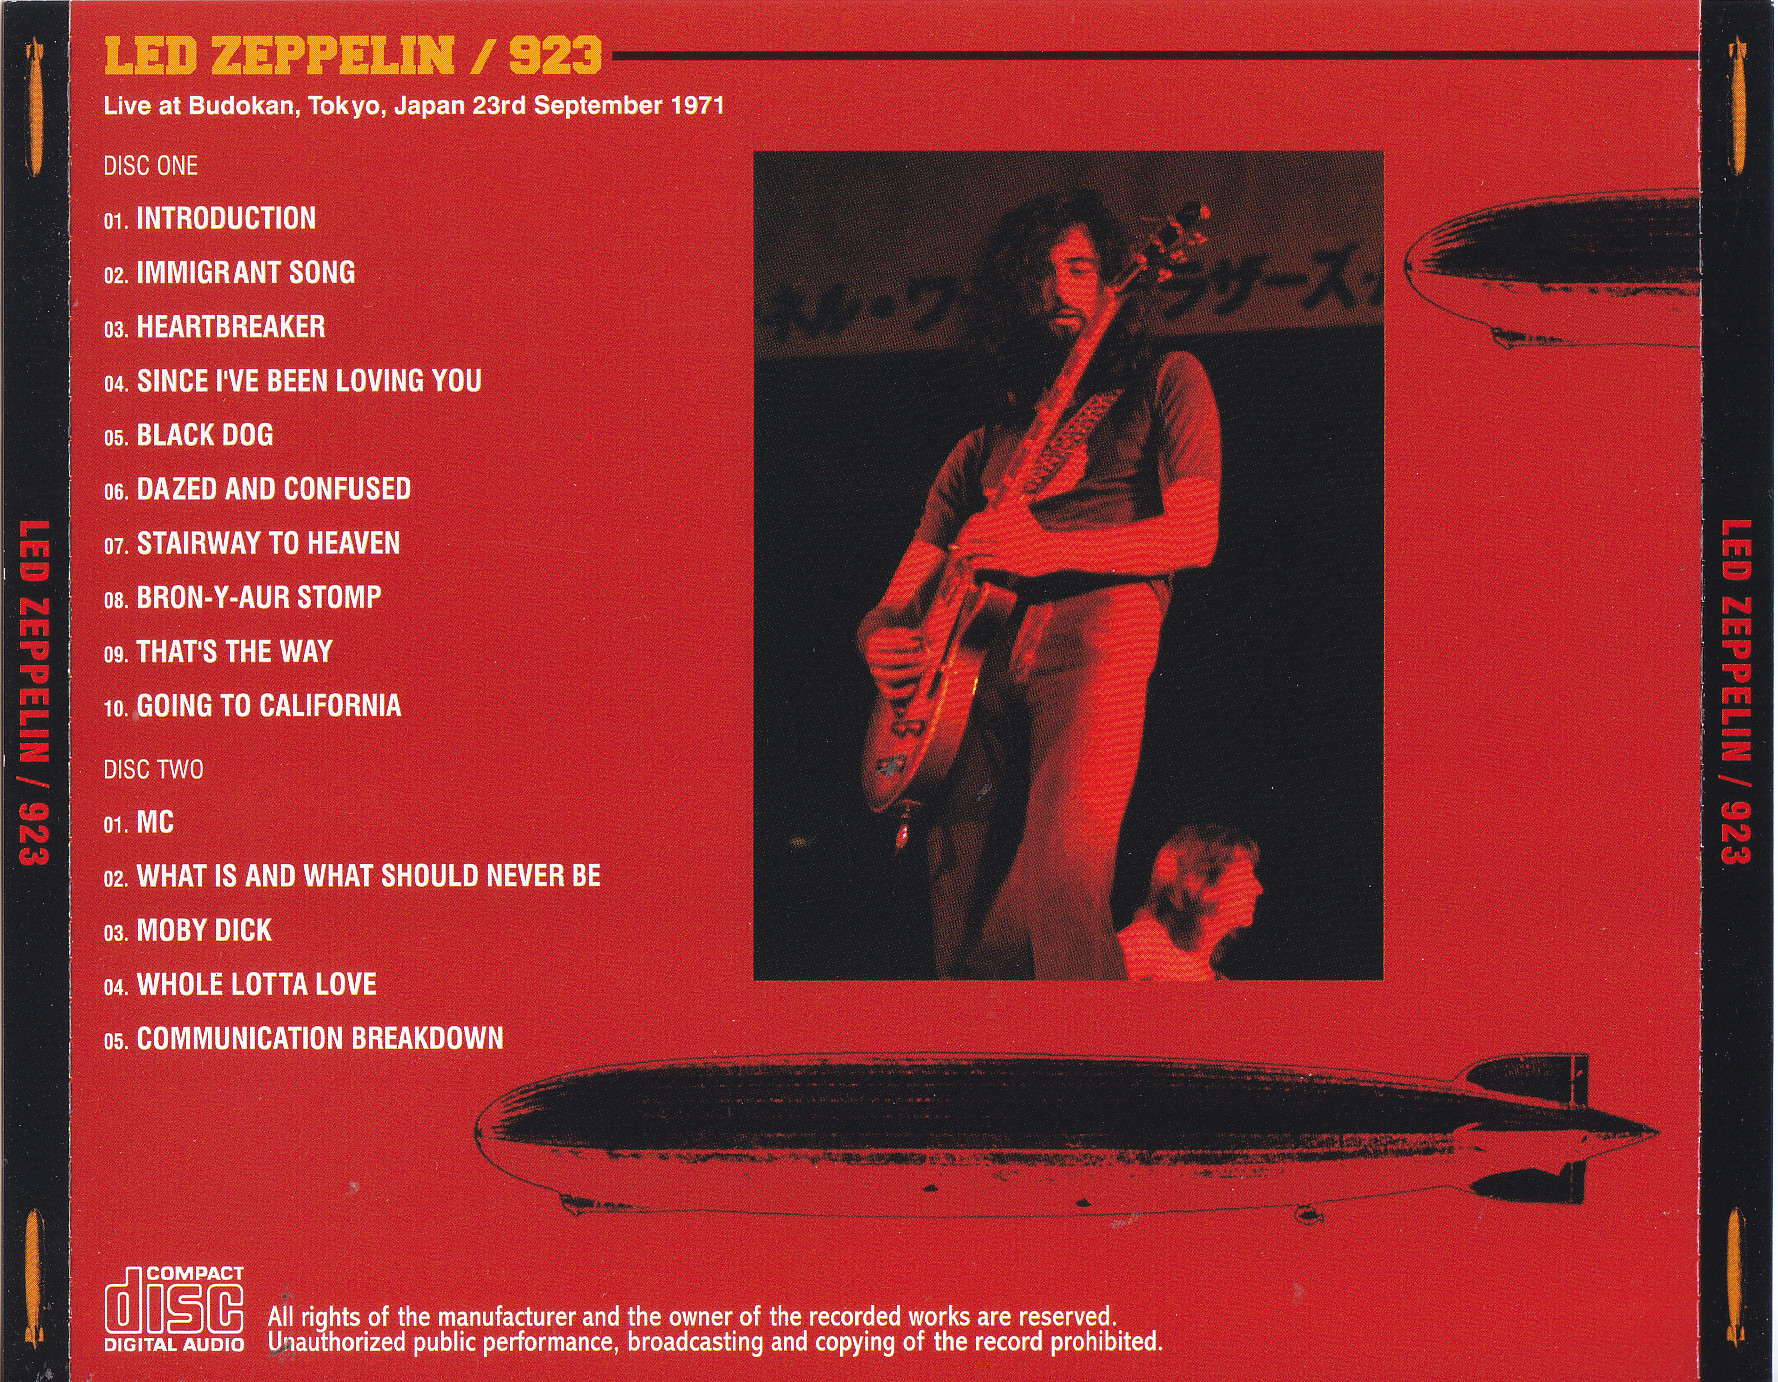 Led Zeppelin / 923 / 2CD – GiGinJapan